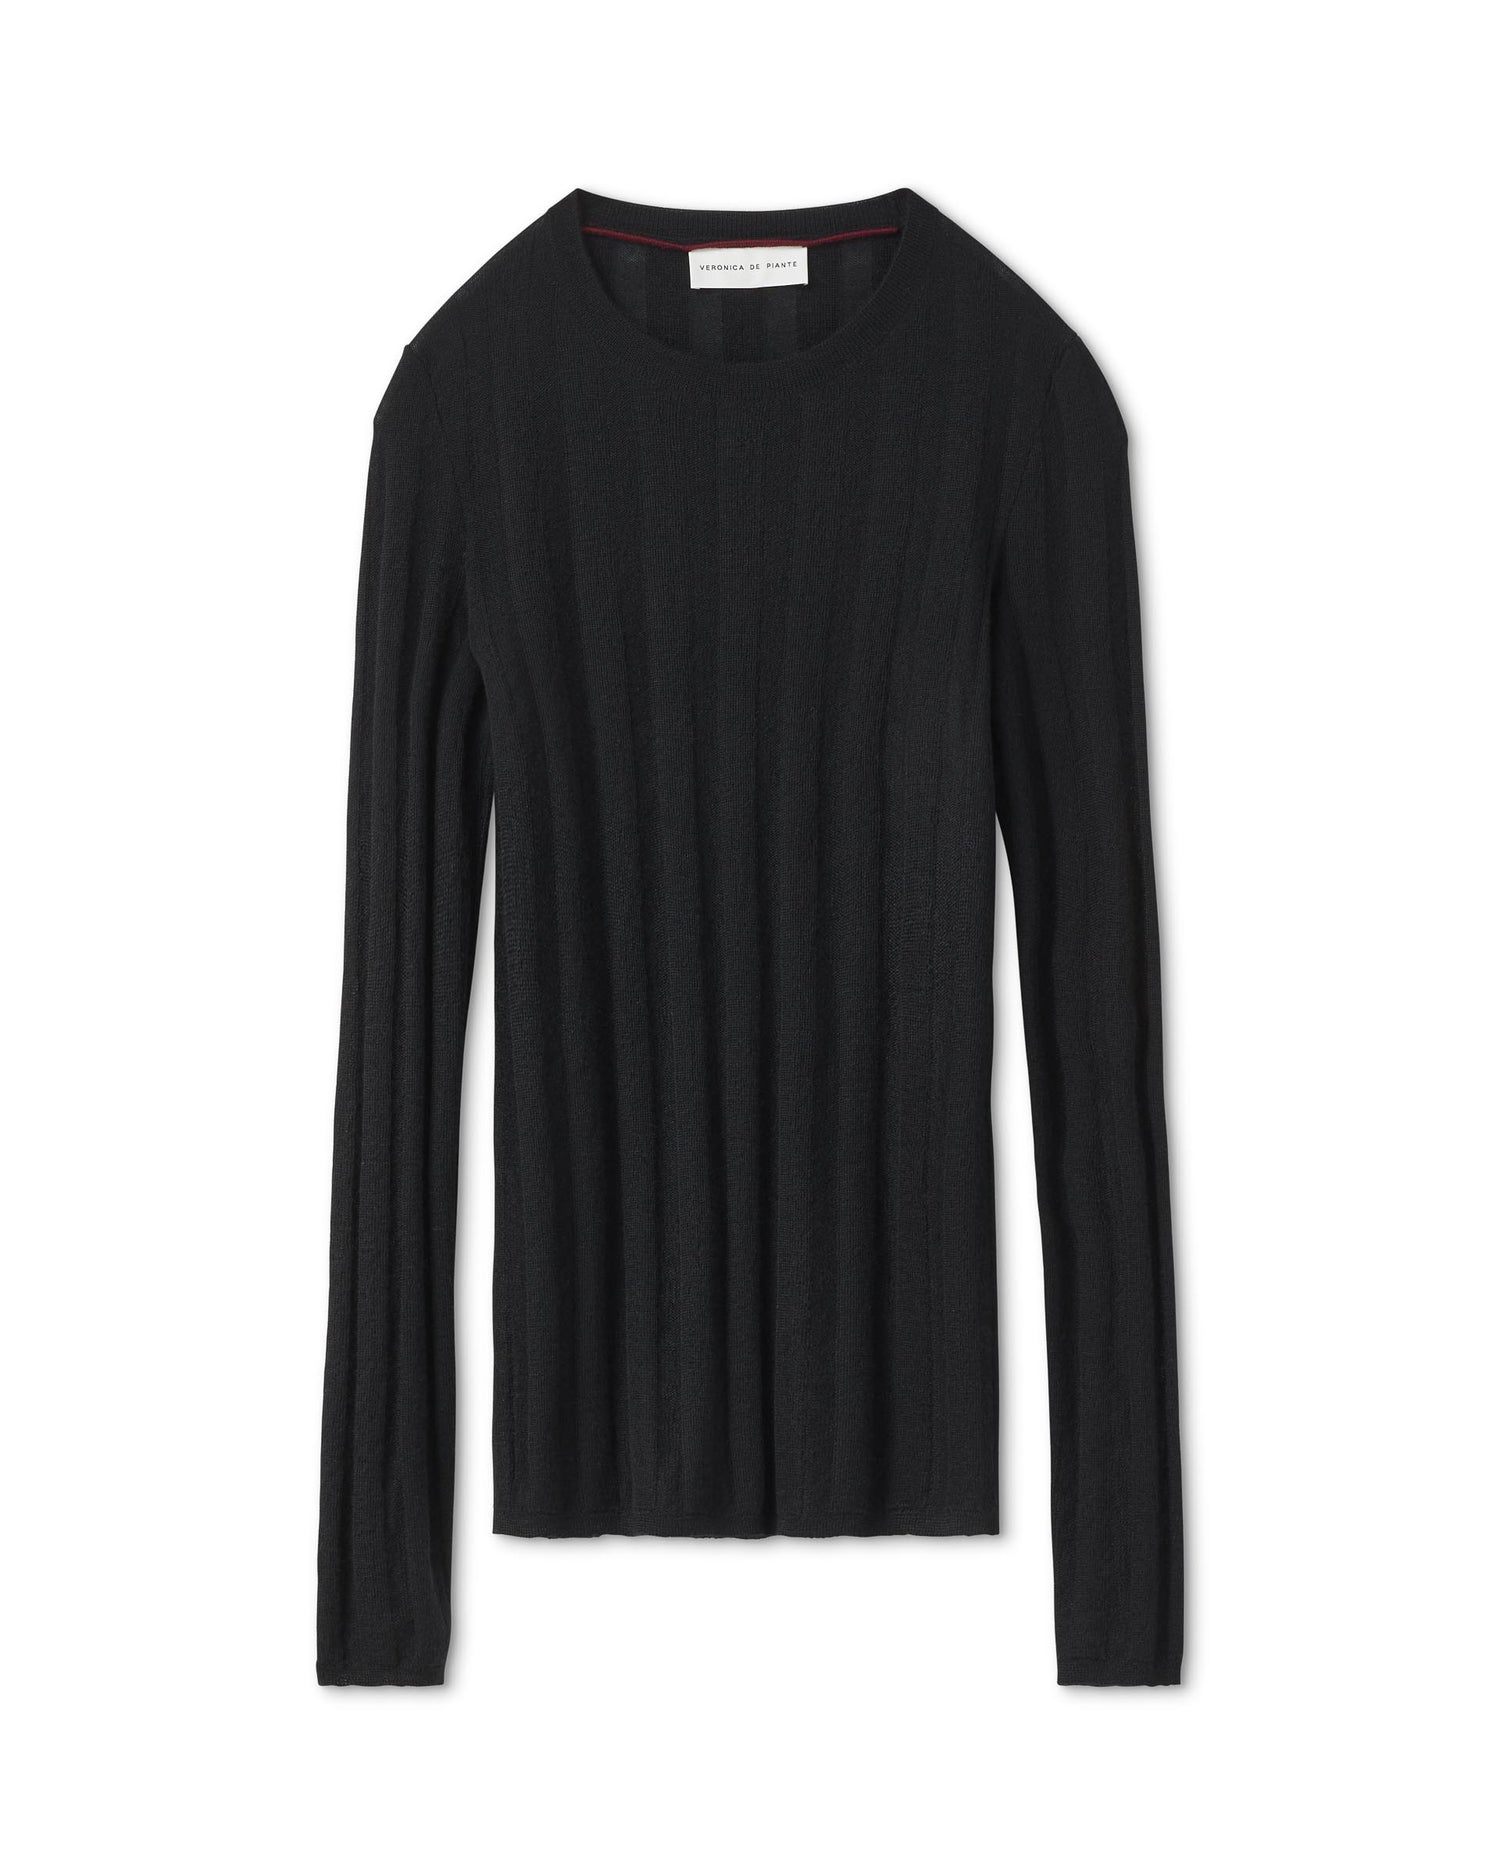 Maya Sweater in Cashmere, Black